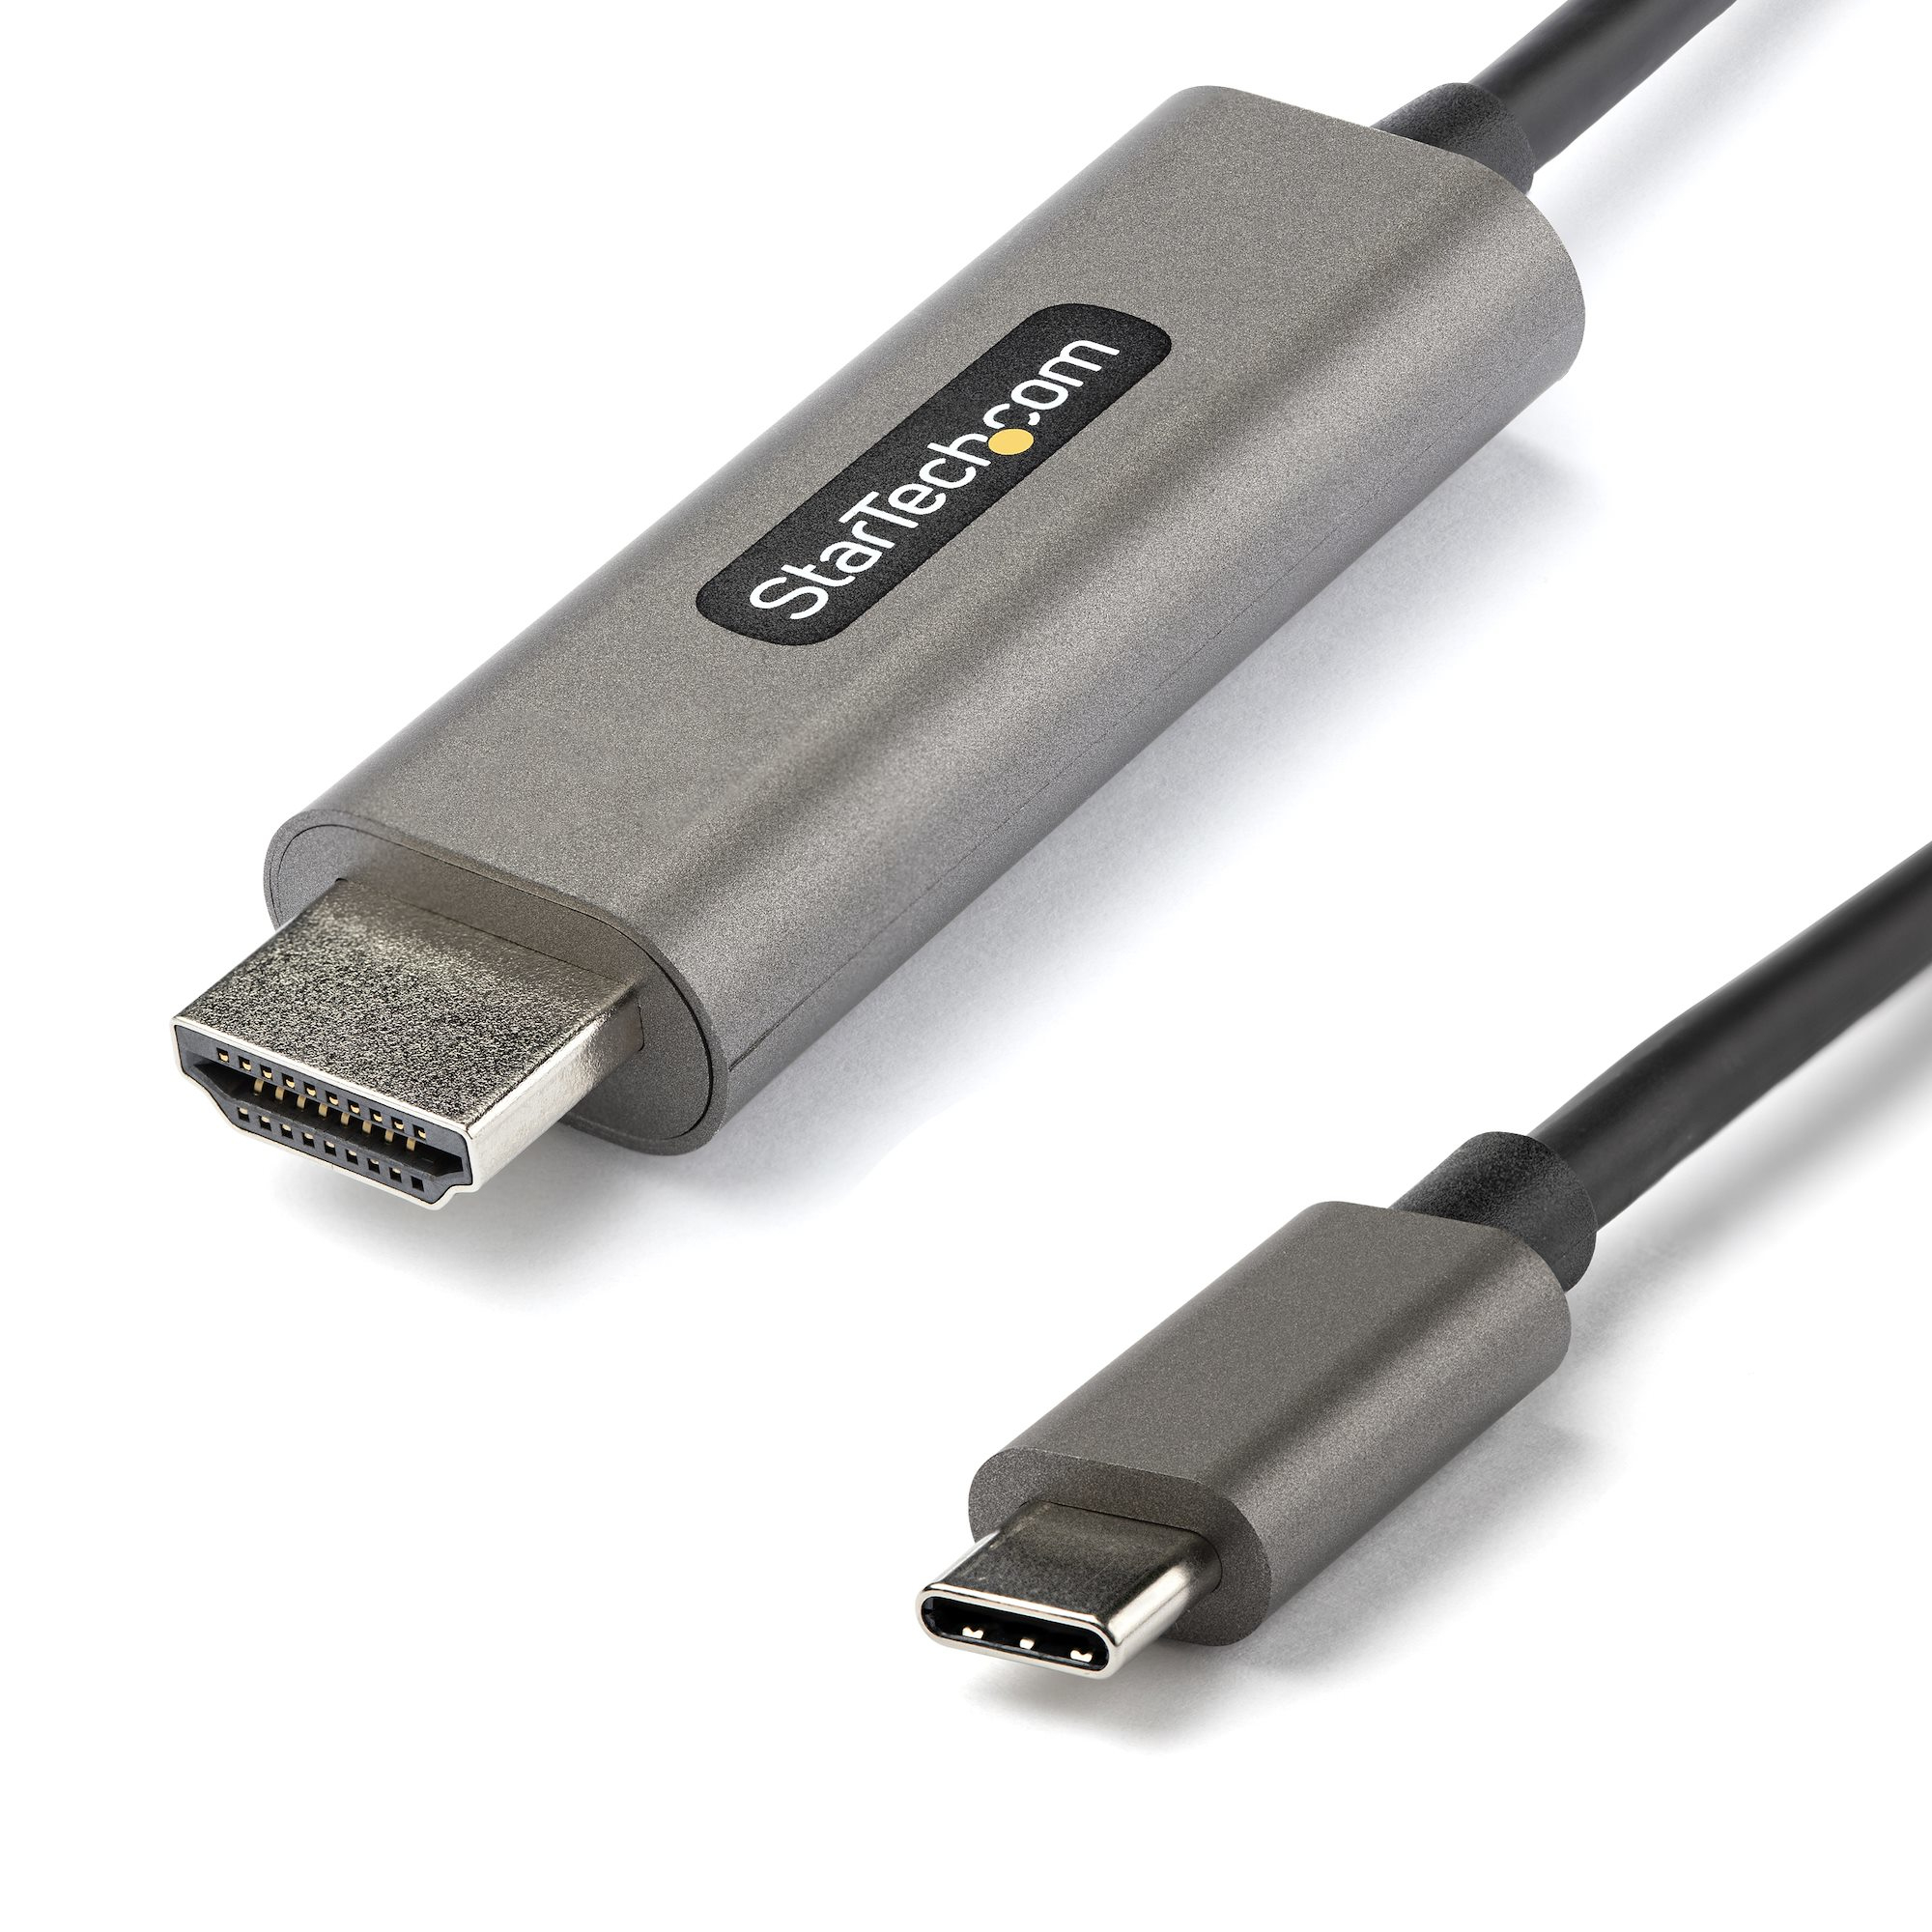 Sandy het beleid Gloed StarTech.com 2m USB-C naar HDMI Kabel 4K 60Hz met HDR10 Ultra HD USB Type-C  naar 4K HDMI 2.0b Video Adapter Kabel USB-C naar HDMI HDR Monitor/Scherm  Converter DP 1.4 Alt Mode HBR3 (